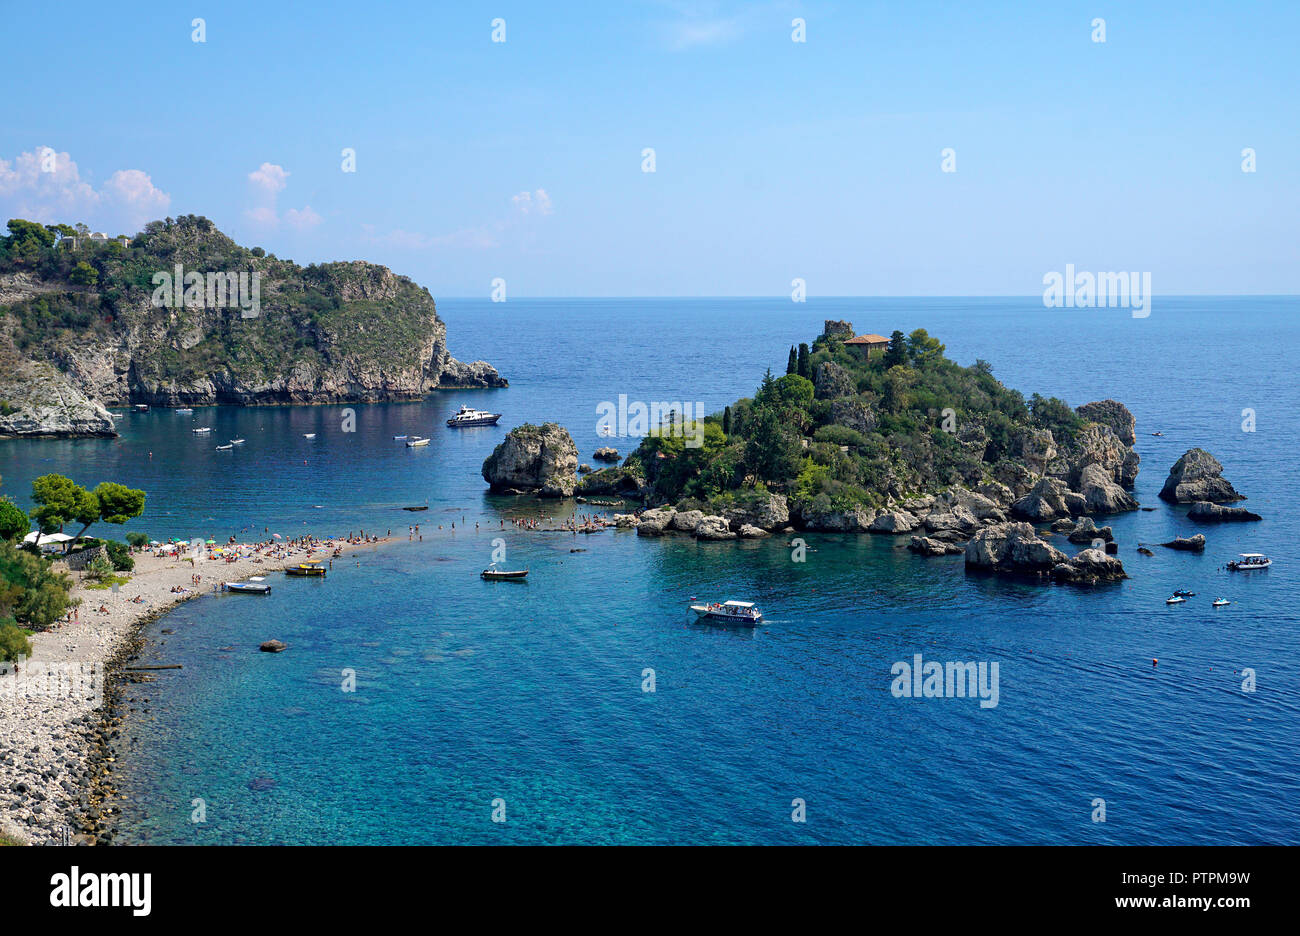 Isola Bella, bella minuscola isola e uno dei monumenti di Taormina, Sicilia, Italia Foto Stock